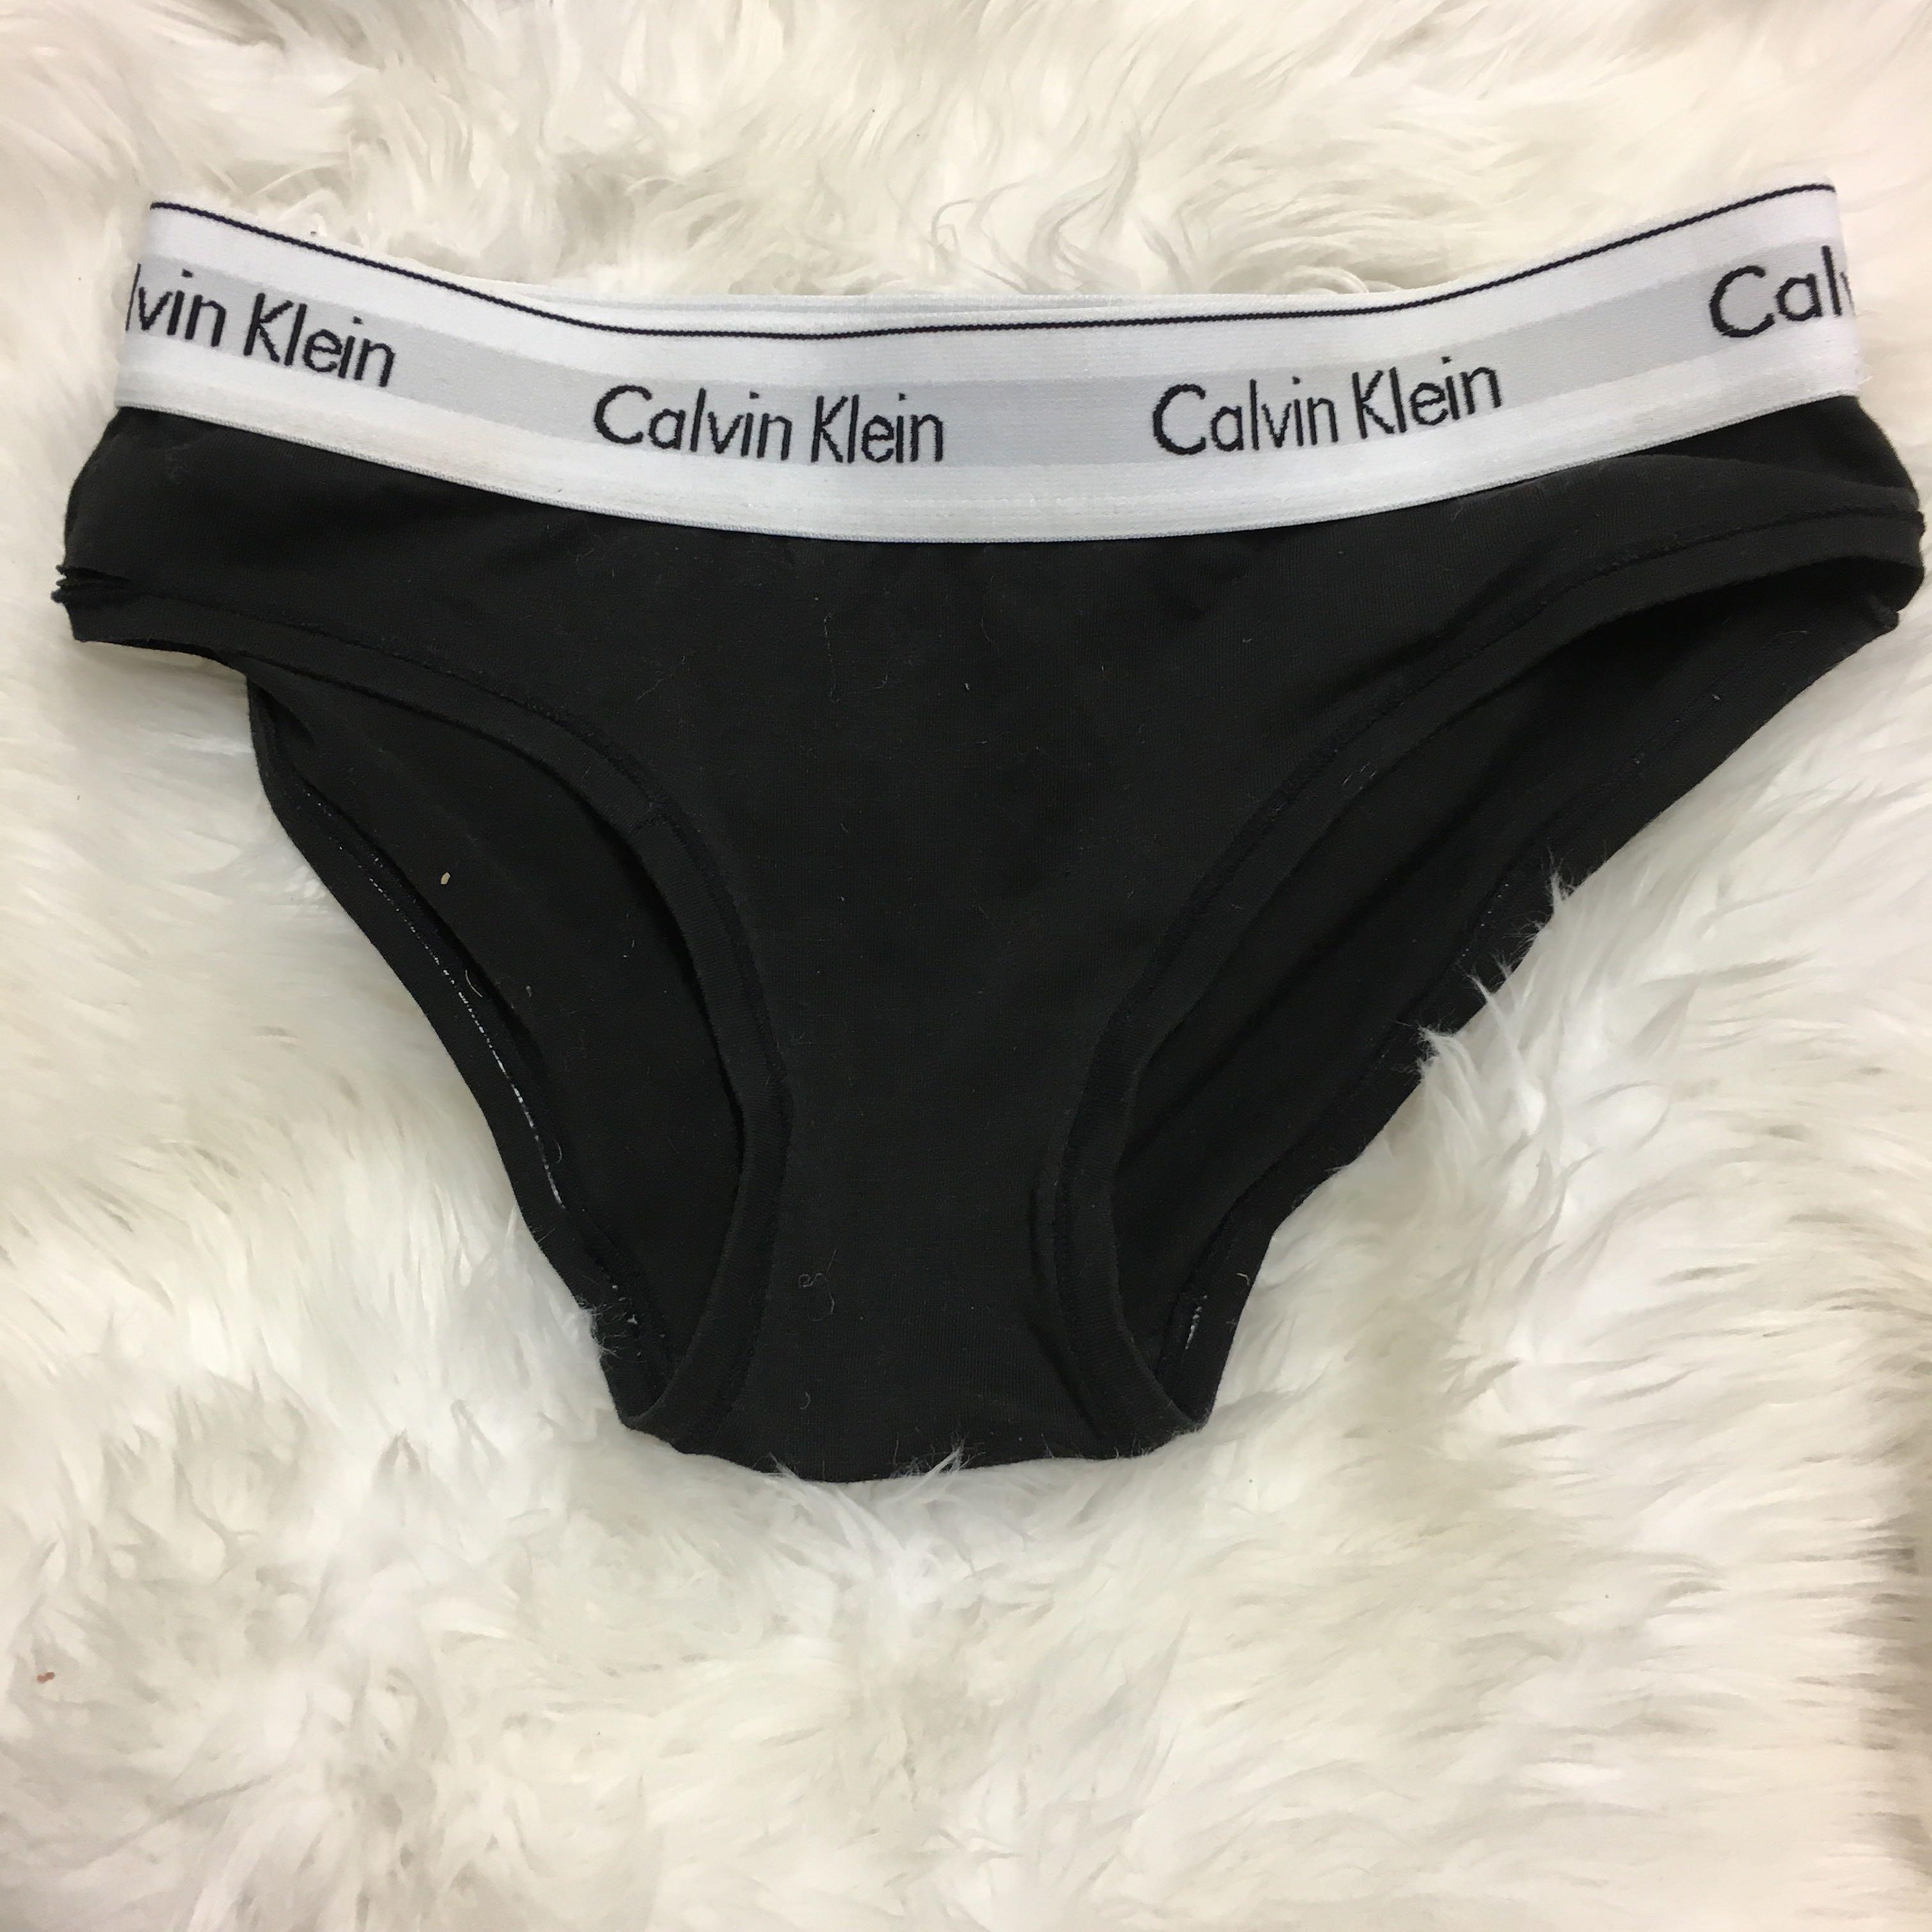 fake calvin klein underwear